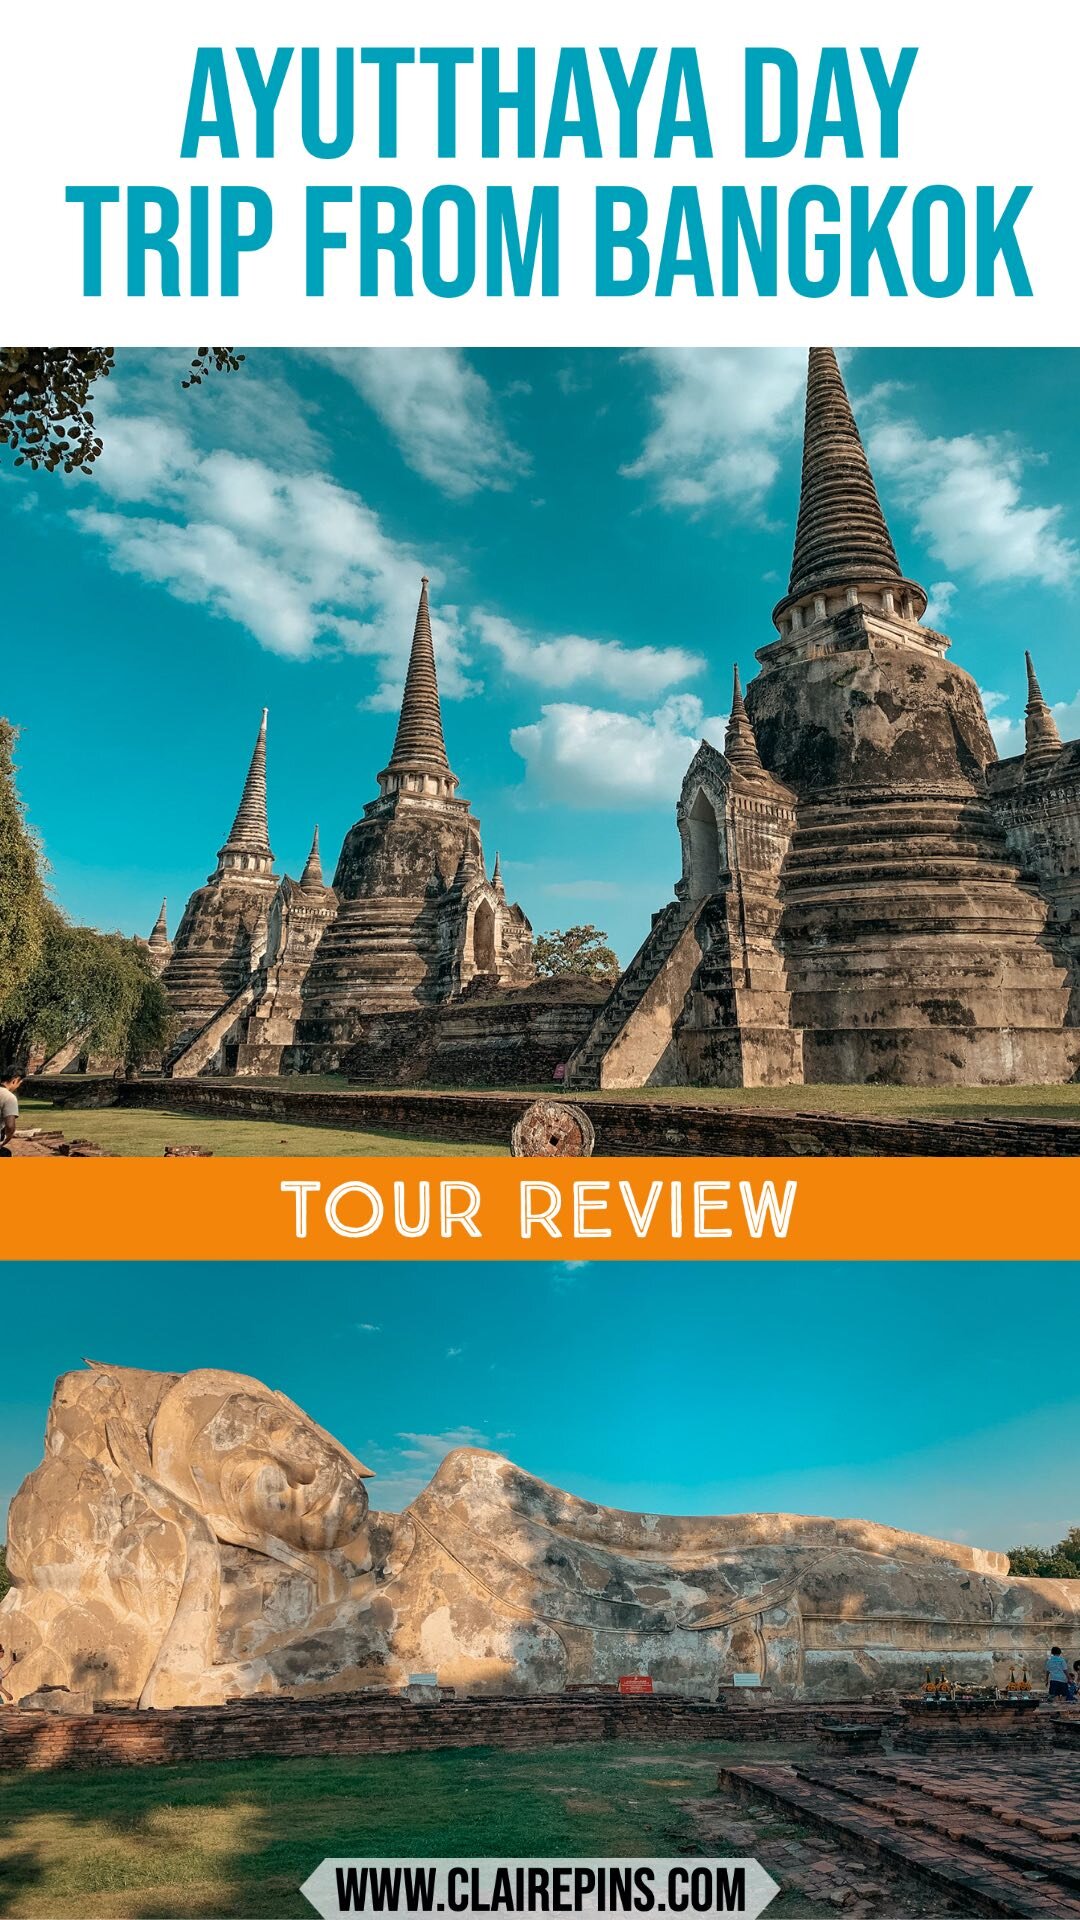 Klook Thailand Trip.jpg